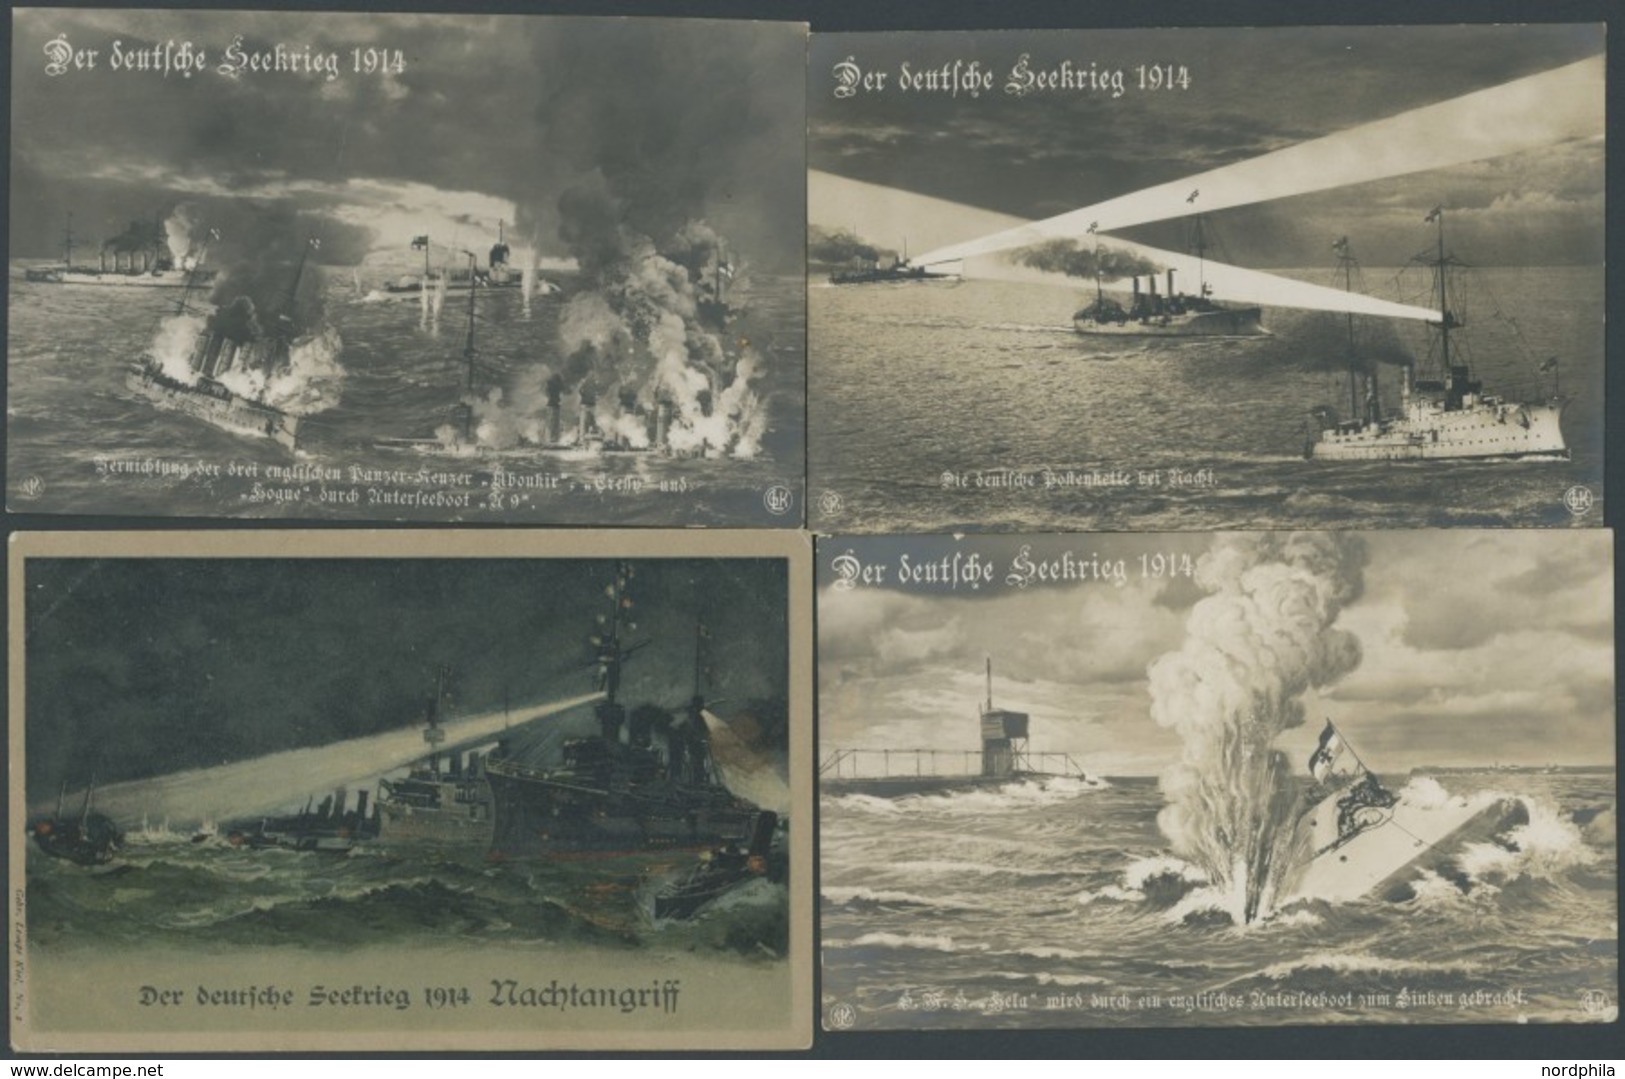 ALTE POSTKARTEN - SCHIFFE KAISERL. MARINE Der Deutsche Seekrieg 1914, 4 Verschiedene Karten Dieser Serie - Krieg